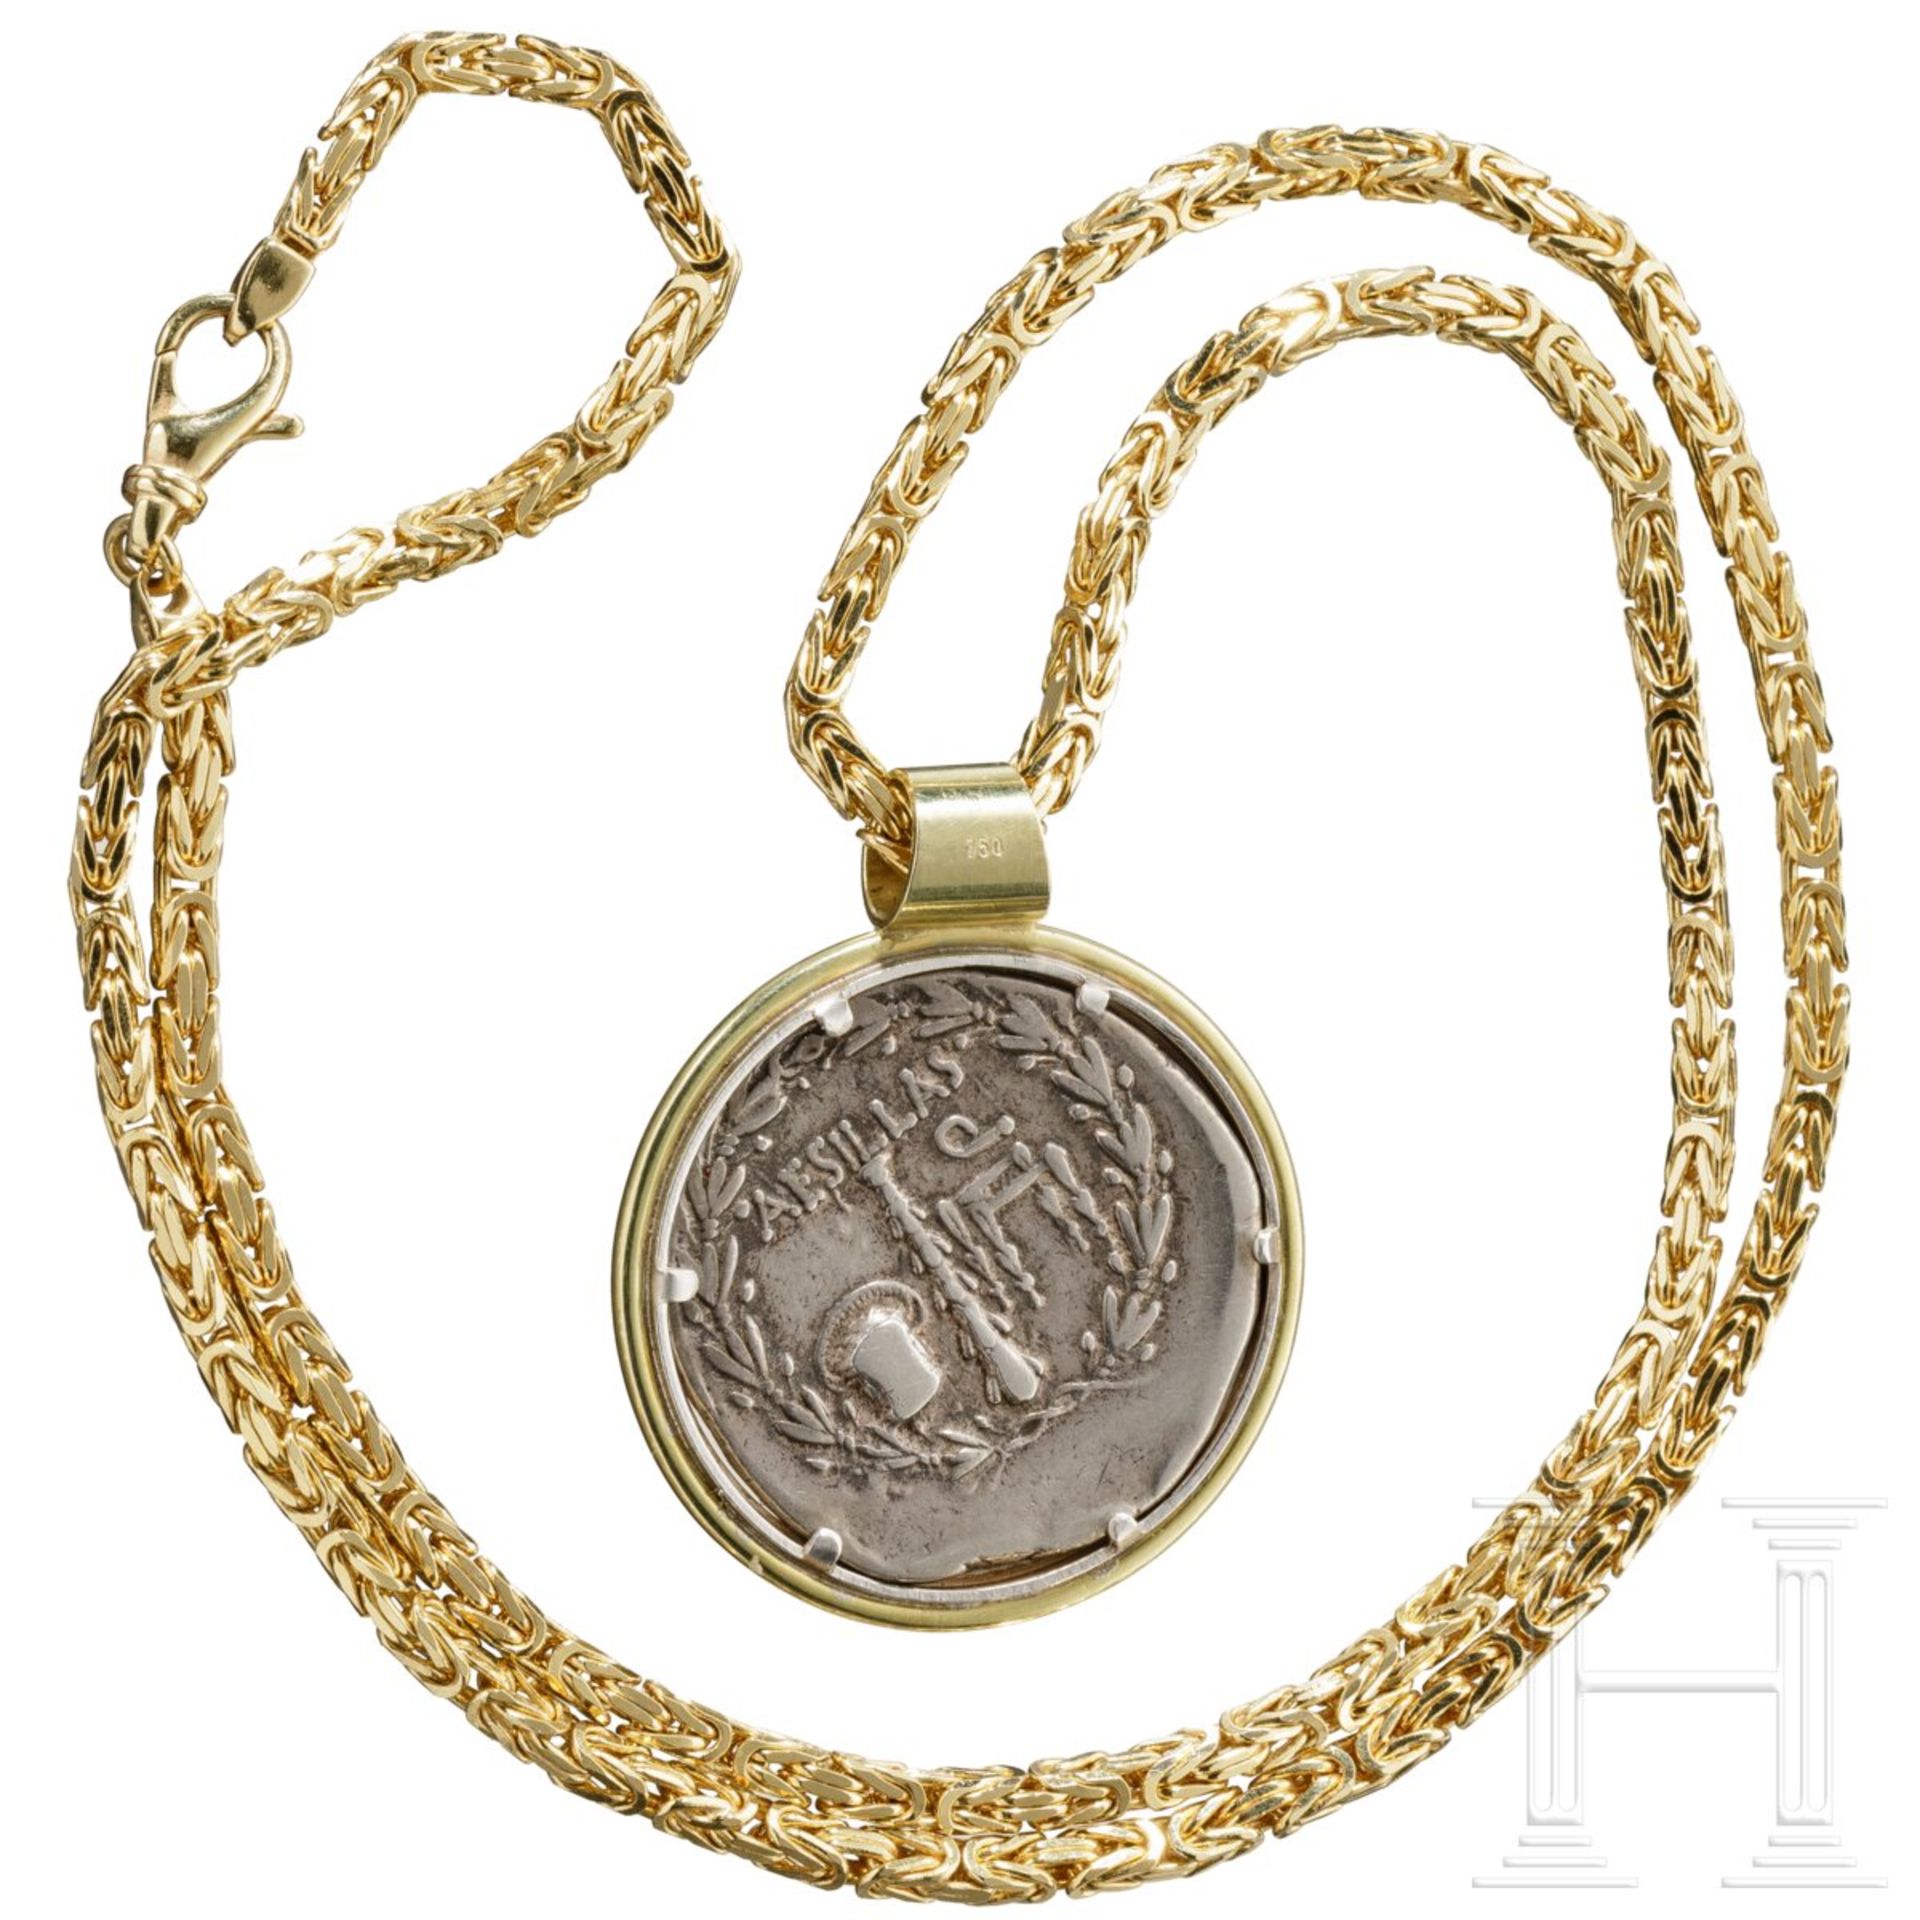 Goldkette mit Goldanhänger mit griechischer Silbermünze (Tetradrachme)  - Bild 2 aus 6